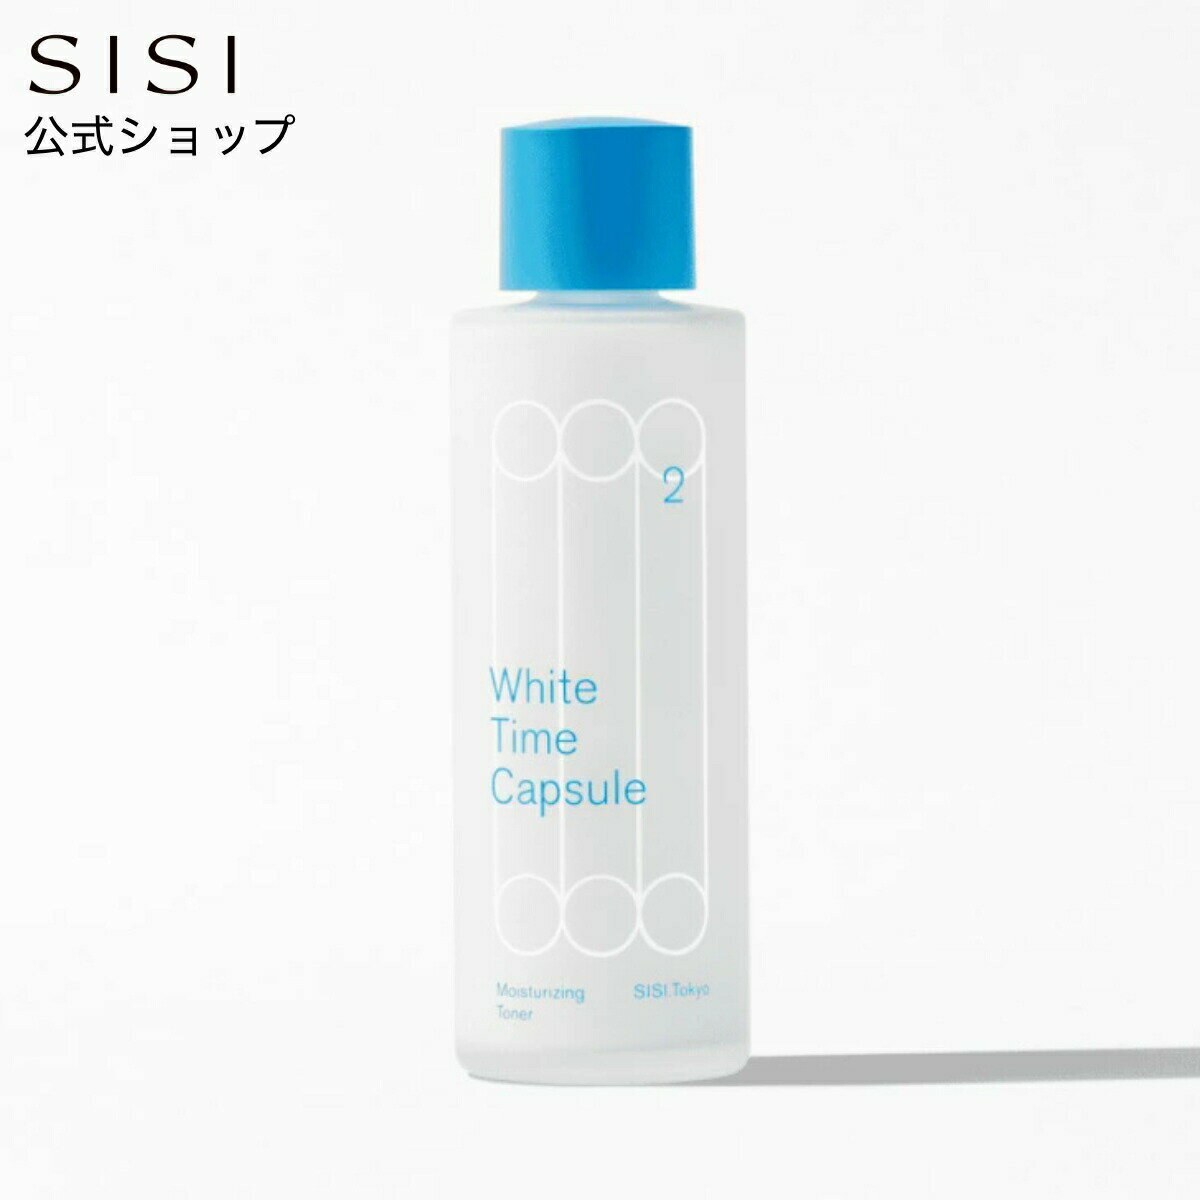 SISI White Time Capsule 保濕化妝水 115ml | SISI White Time Capsule 化妝液 保濕 保濕化妝水 水潤 美肌 透明感 水分 乾燥肌 敏感肌 護膚 化妝品 美容 日本必買 | 日本樂天熱銷